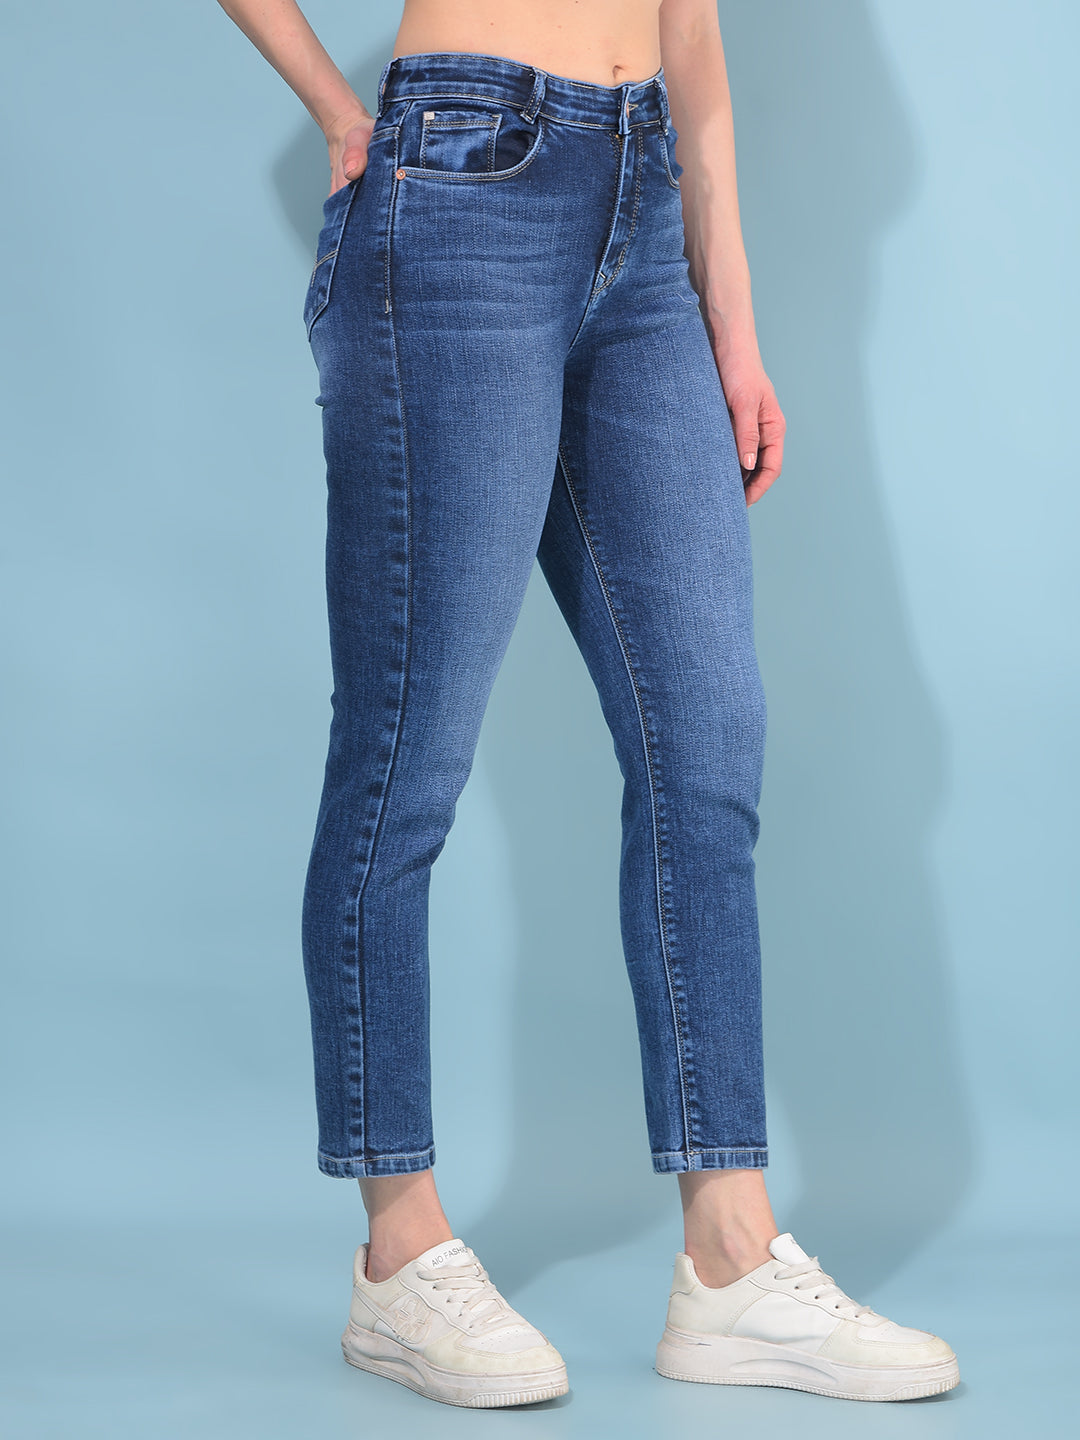 Blue Straight Cotton Jeans-Women Jeans-Crimsoune Club